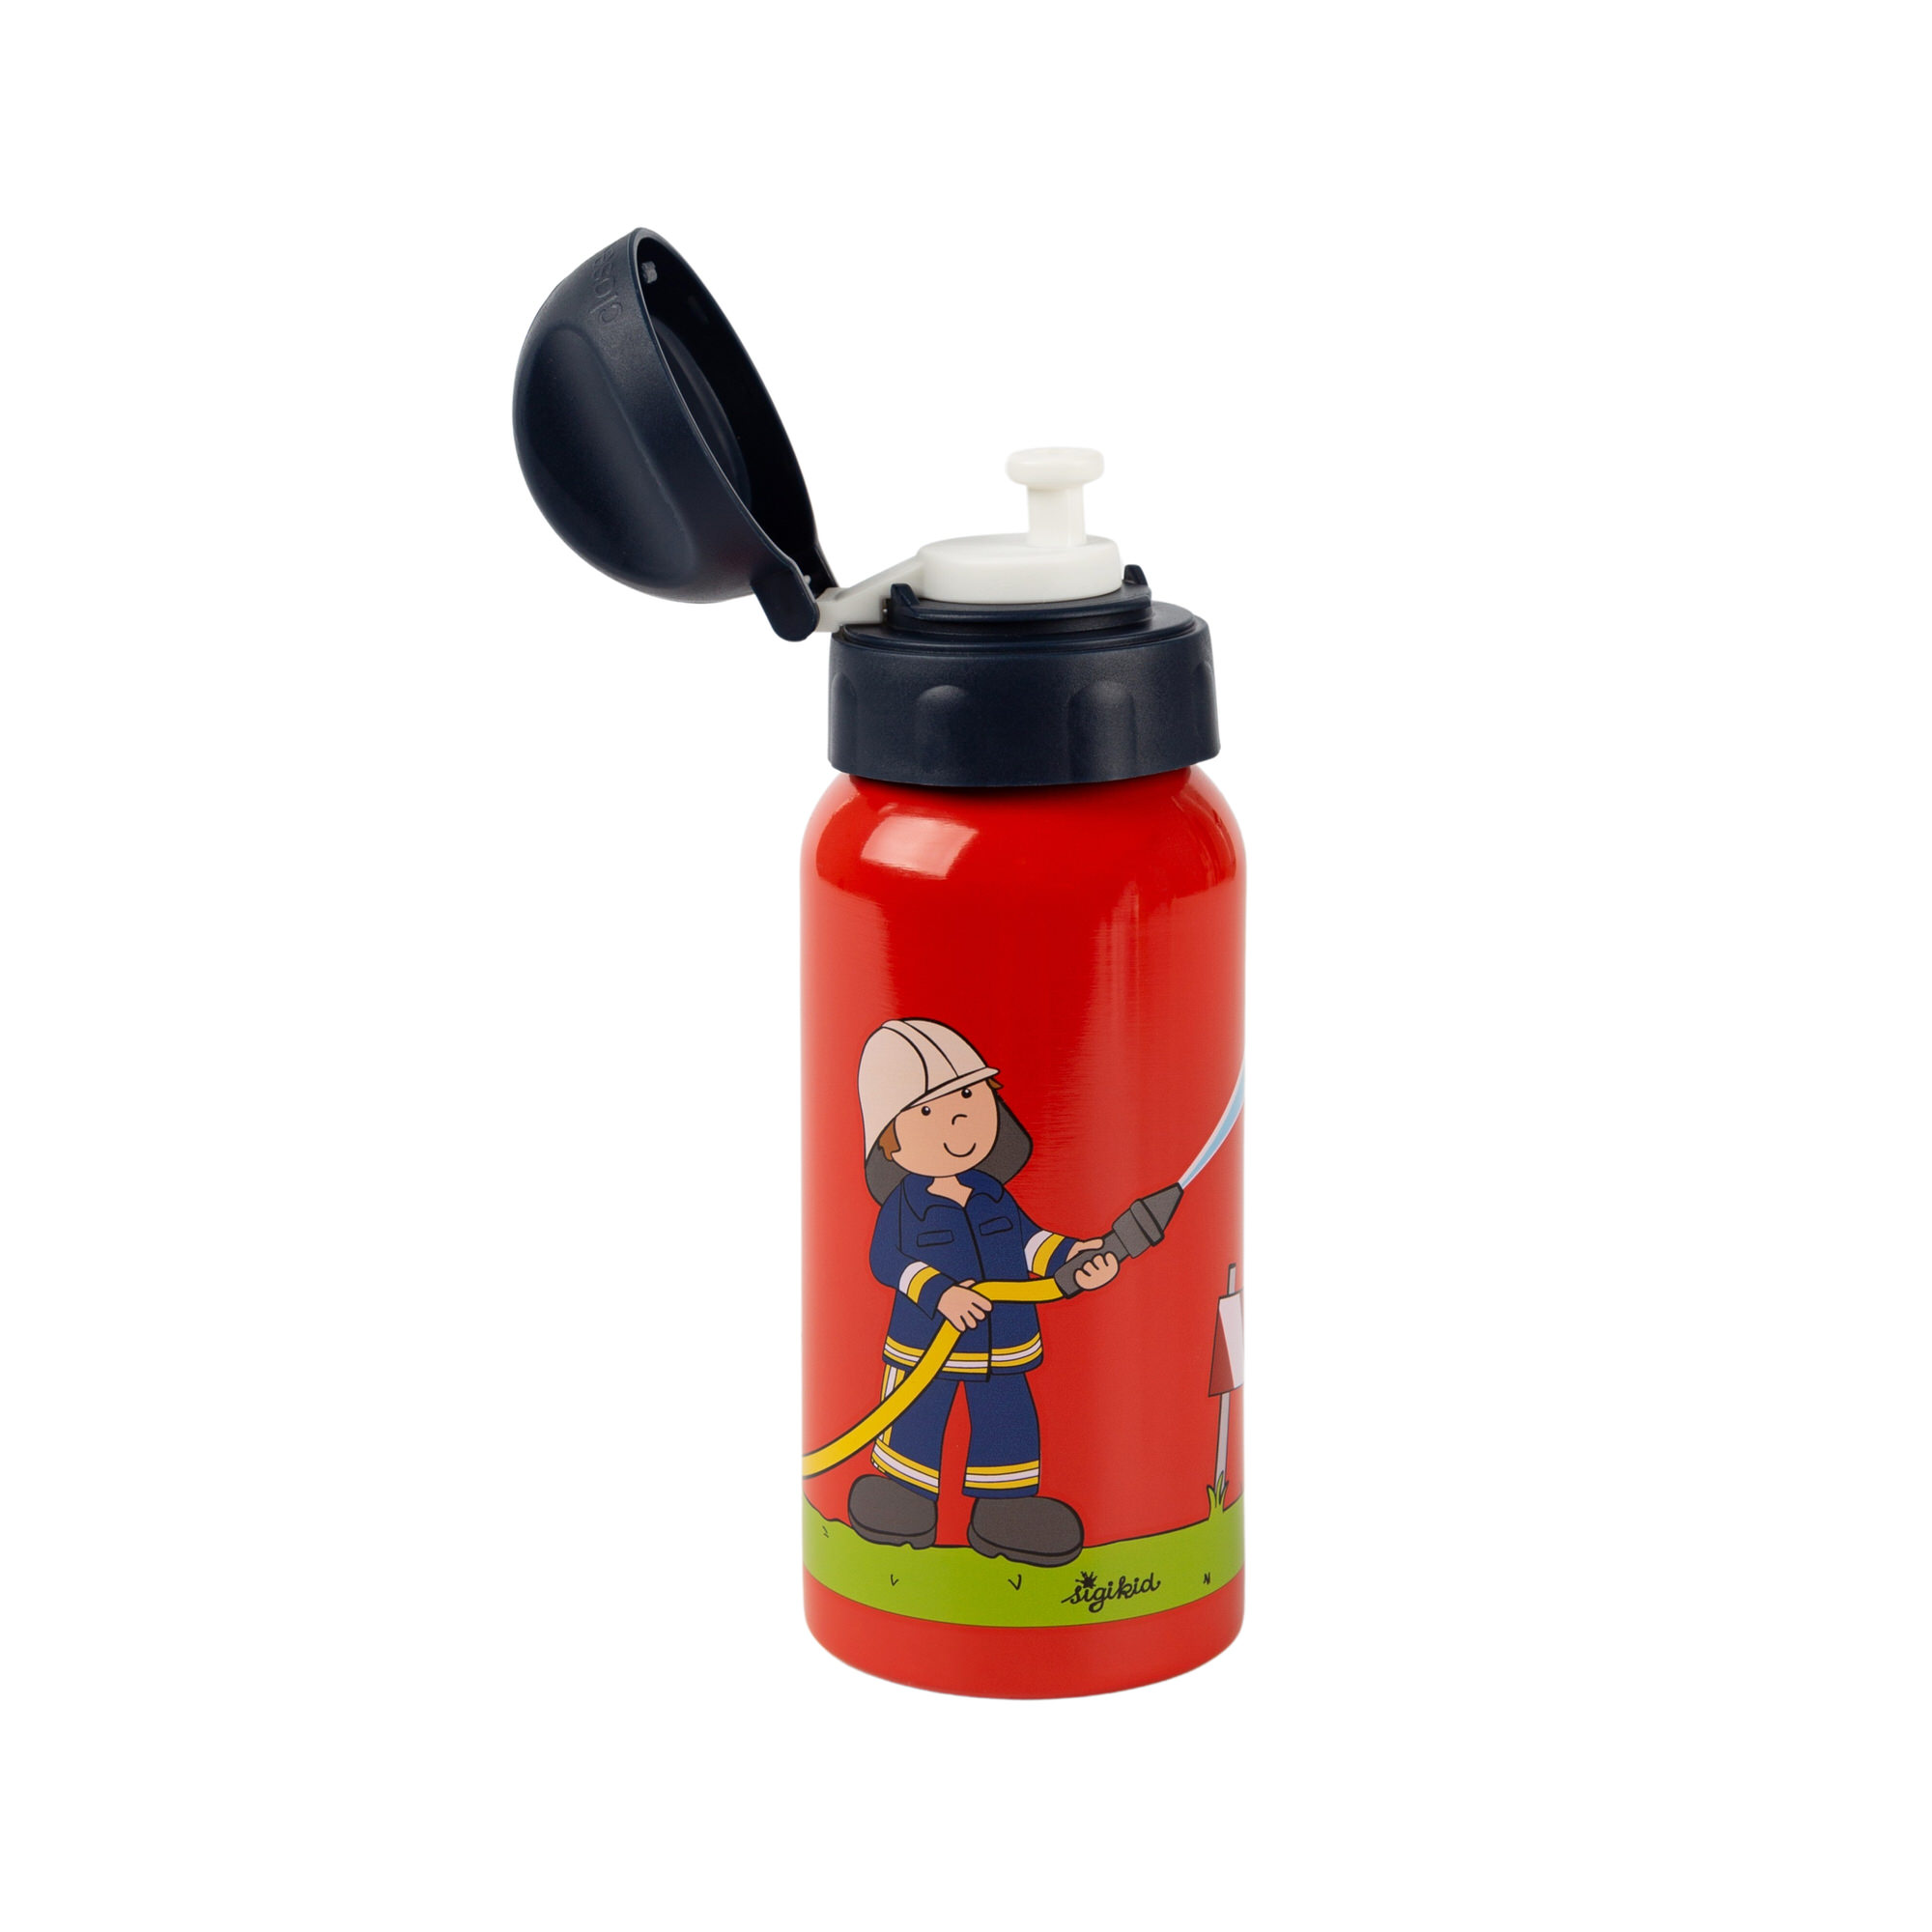 Kinder Edelstahl-Trinkflasche Feuerwehrmann Frido Firefighter